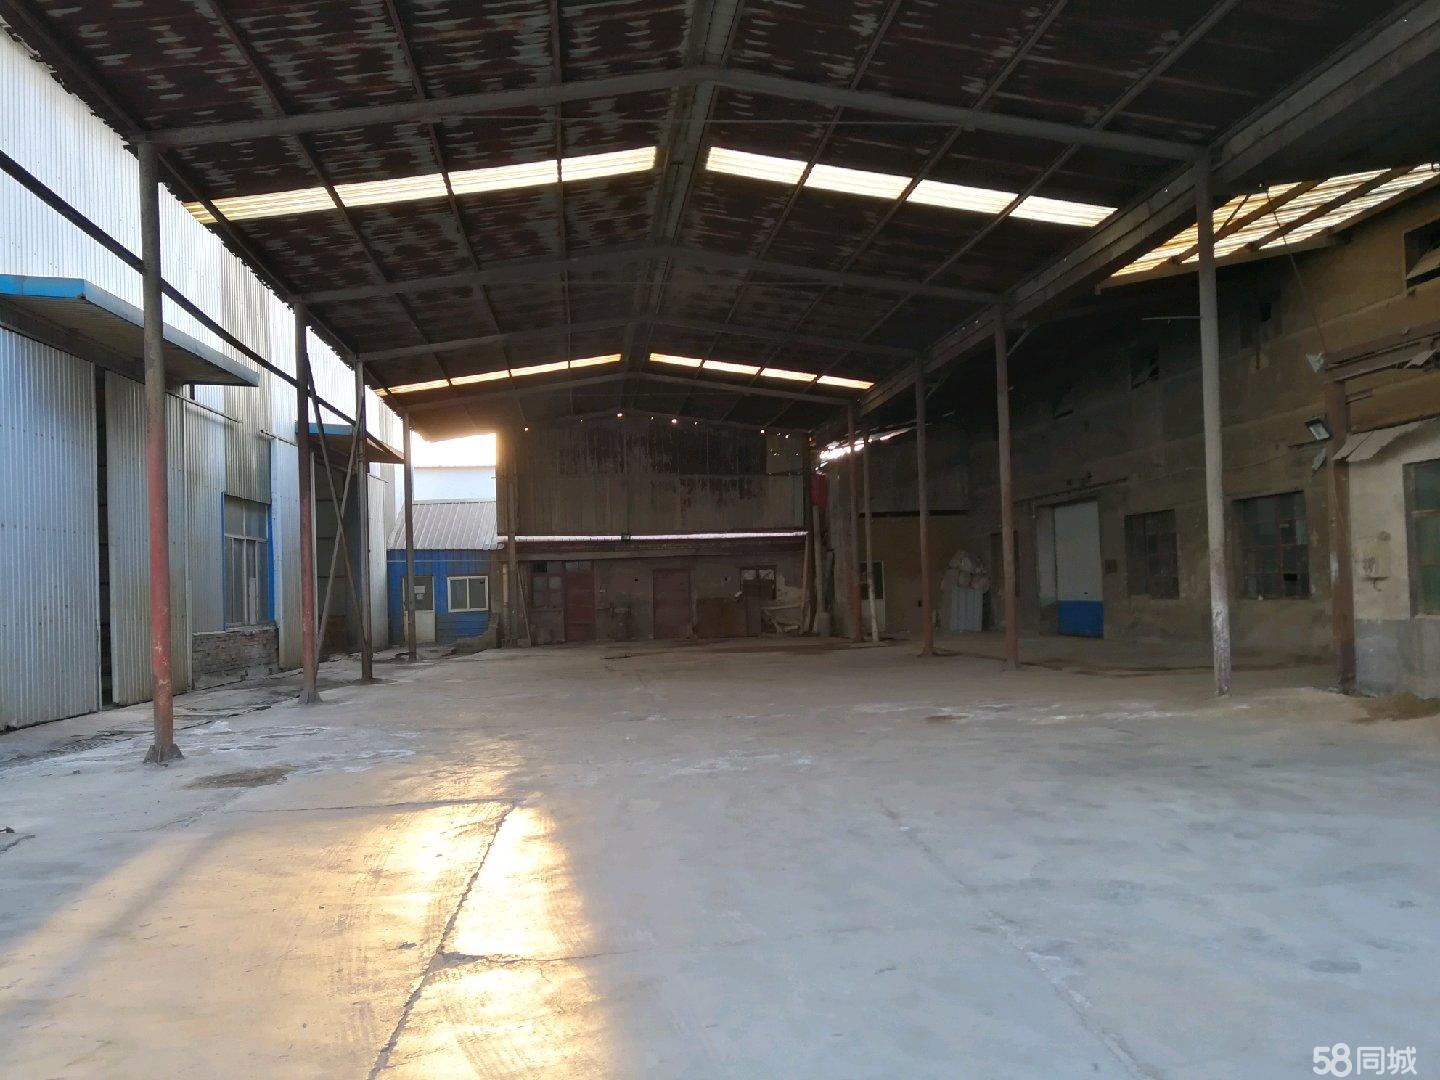 (出租) 济南市钢城区钢都大街运行 厂房 1500平米